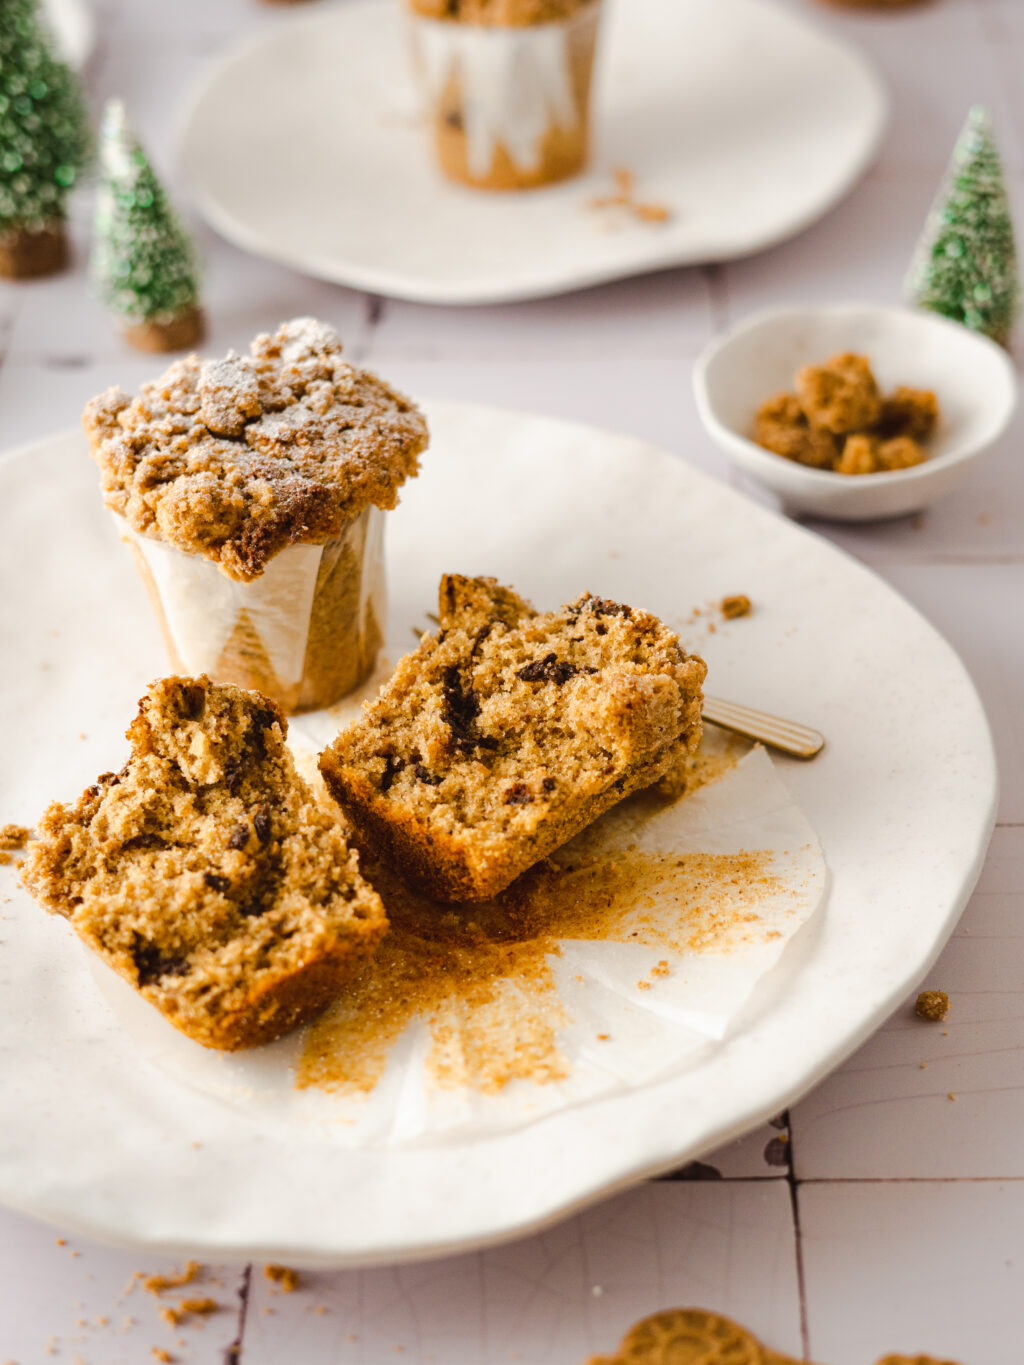 Super einfache Spekulatius Muffins mit winterlichen Spekulatius Streuseln. Diese schnellen Muffins sind mit Zimt, Orangenschale, Vanille und Schokostückchen einfach perfekt für die Winterzeit, denn sie sind nicht nur schnell gemacht sondern auch noch super lecker! #Weihnachtsbäckerei #backen #Muffins #Streusel #Rezept #Zimt #Spekulatius